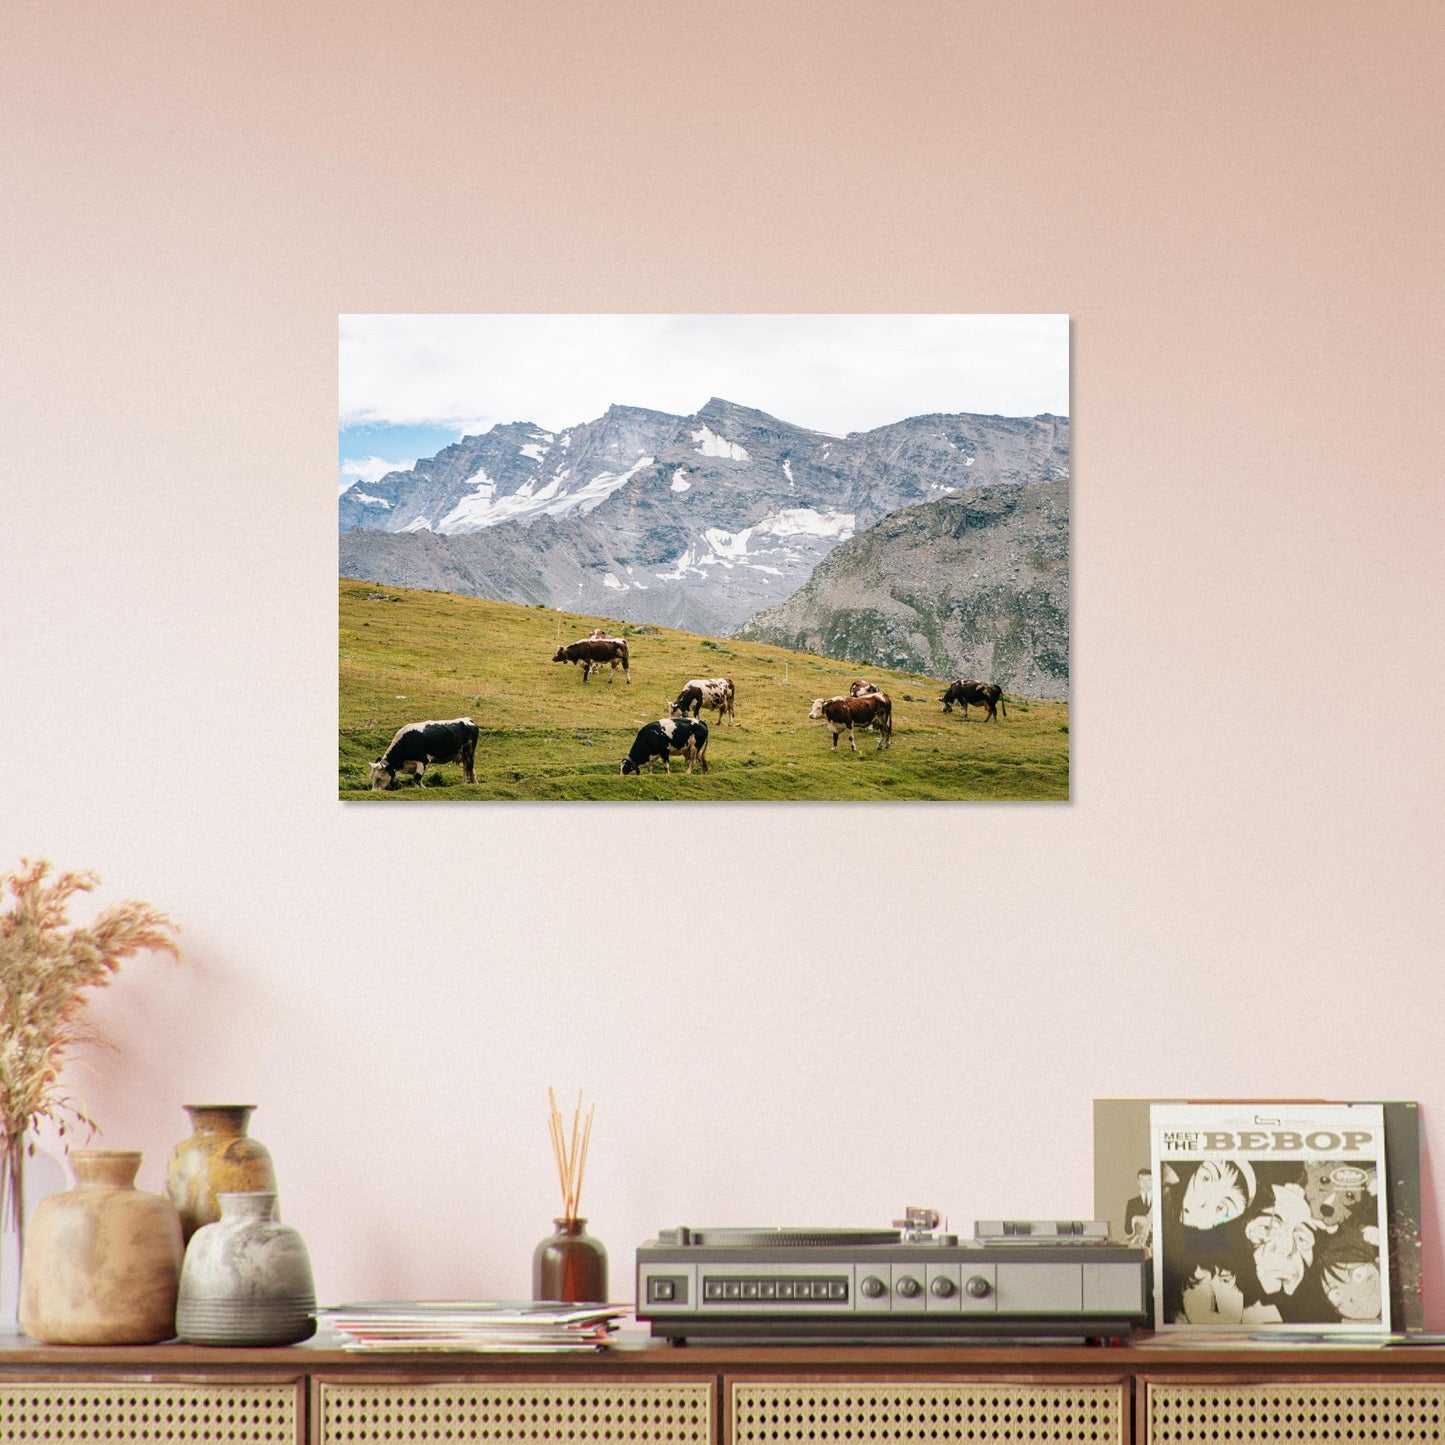 Vente Photo de vaches en Savoie #7 - Tableau photo paysage